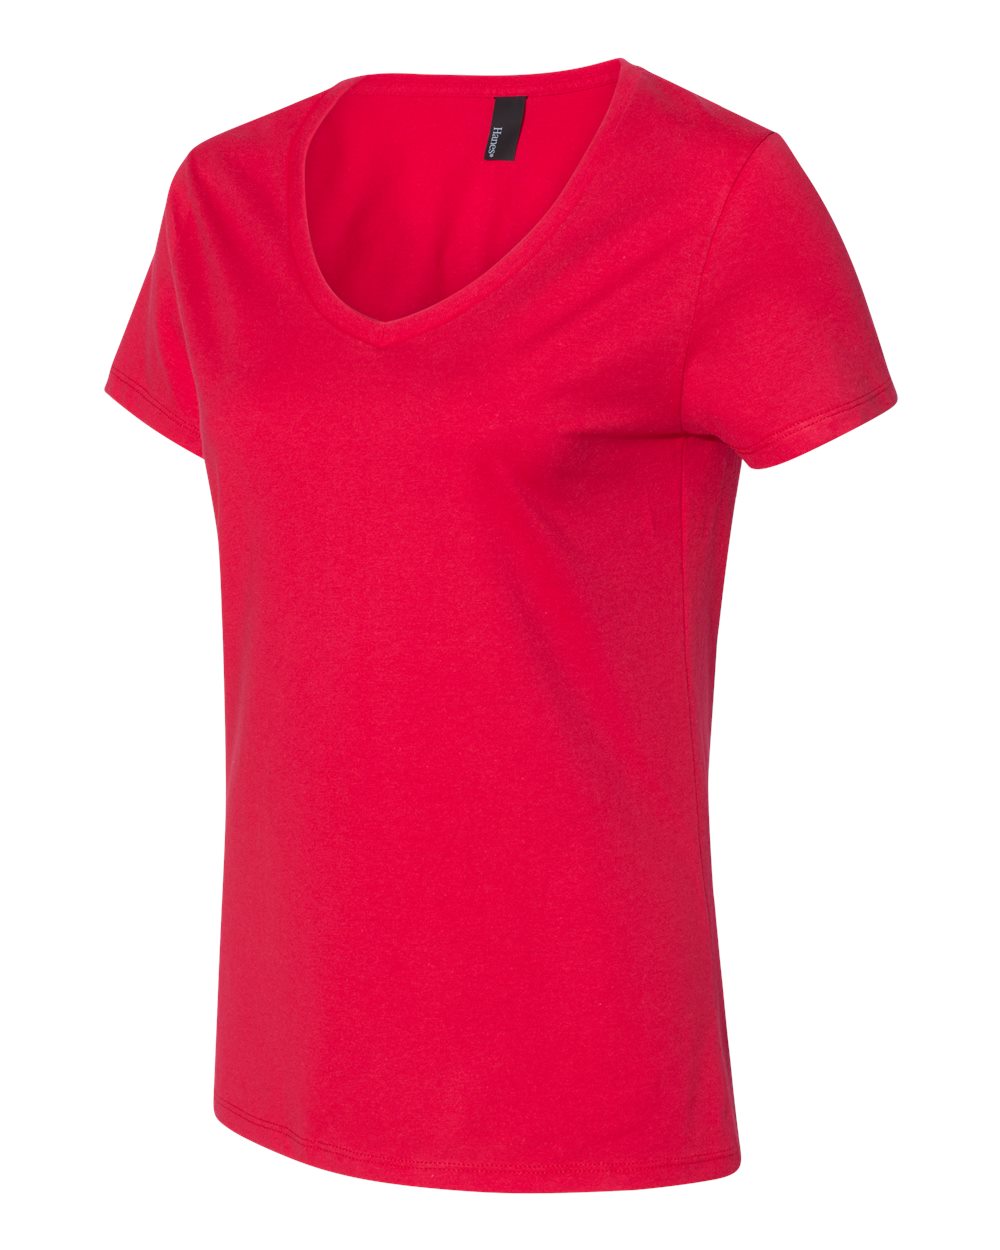 Hanes Women's Nano-T V-Neck T-Shirt - image 3 of 5